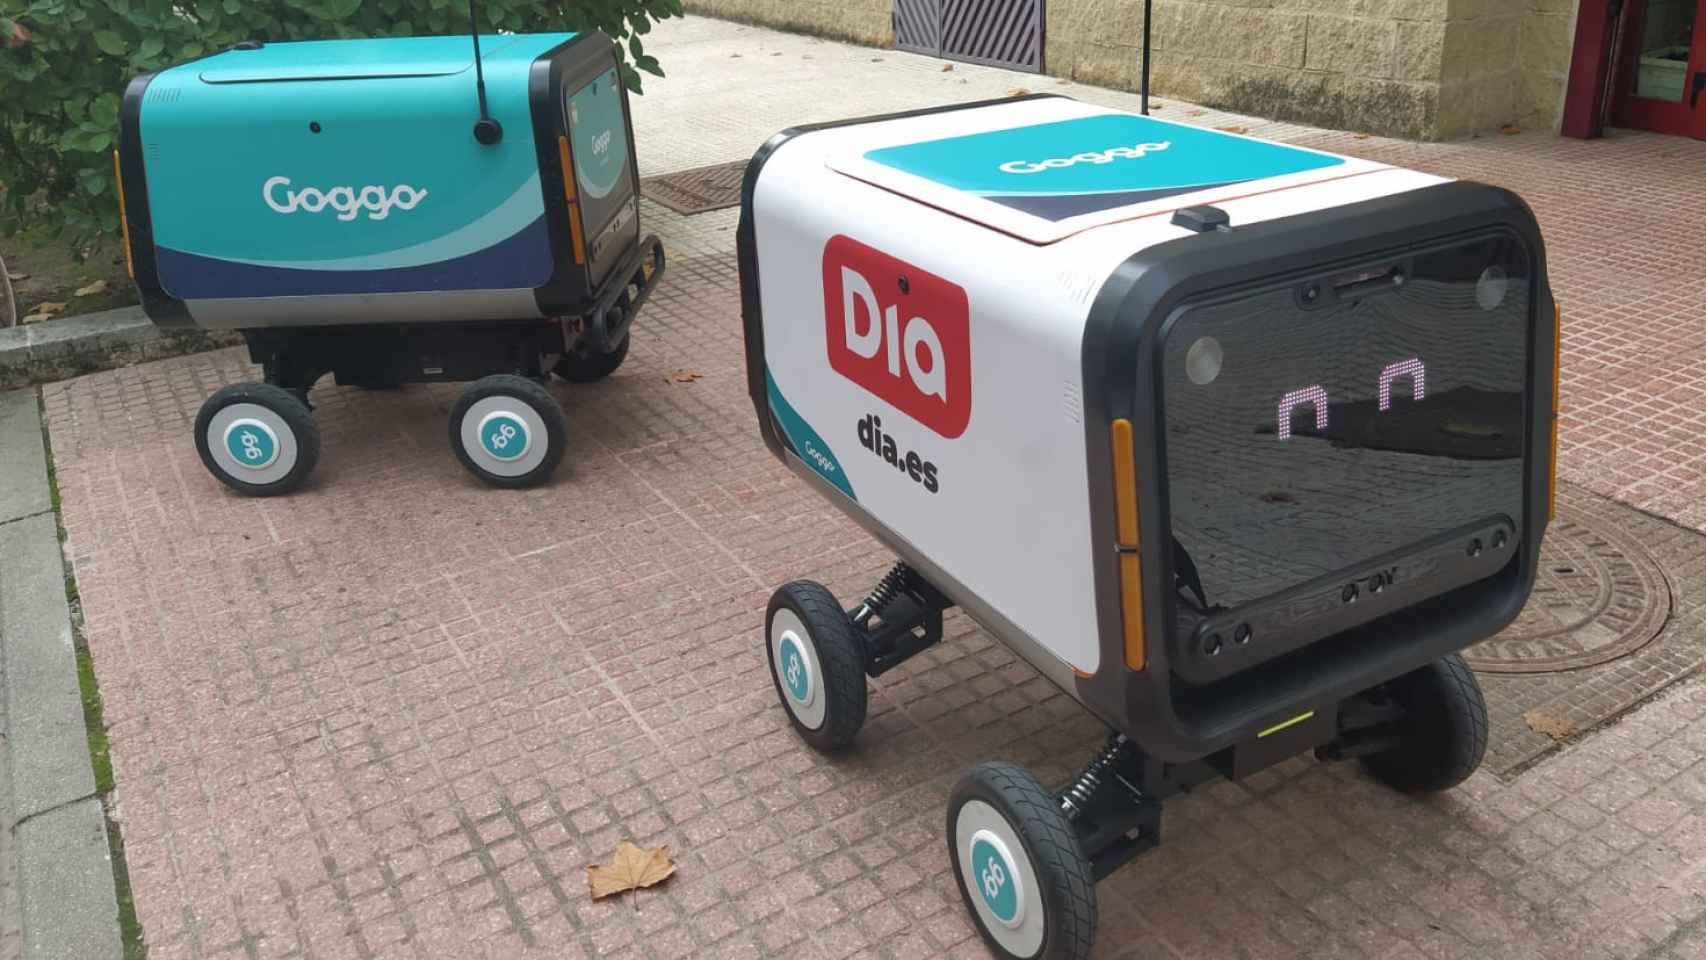 Dos robots repartidores de Goggo Network, que operarán para Dia o Telepizza.